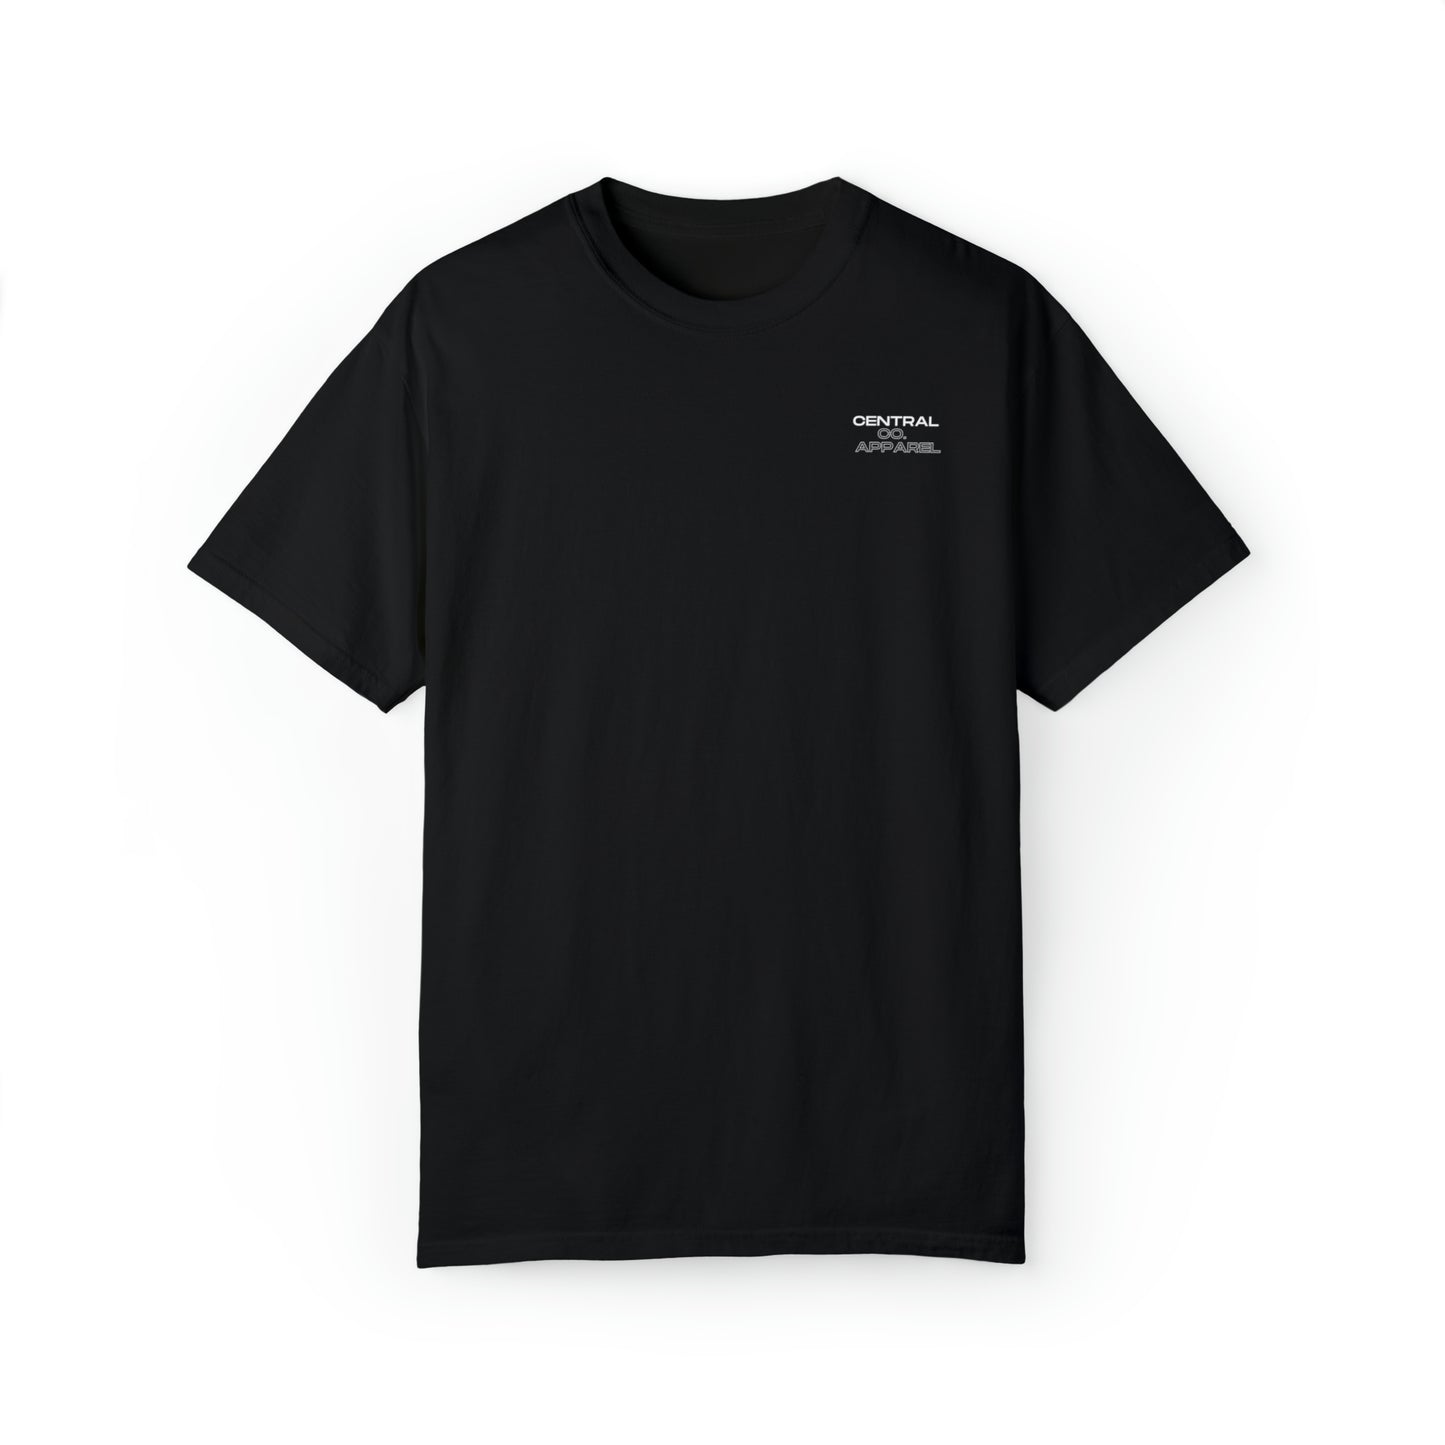 UF Gators T-shirt